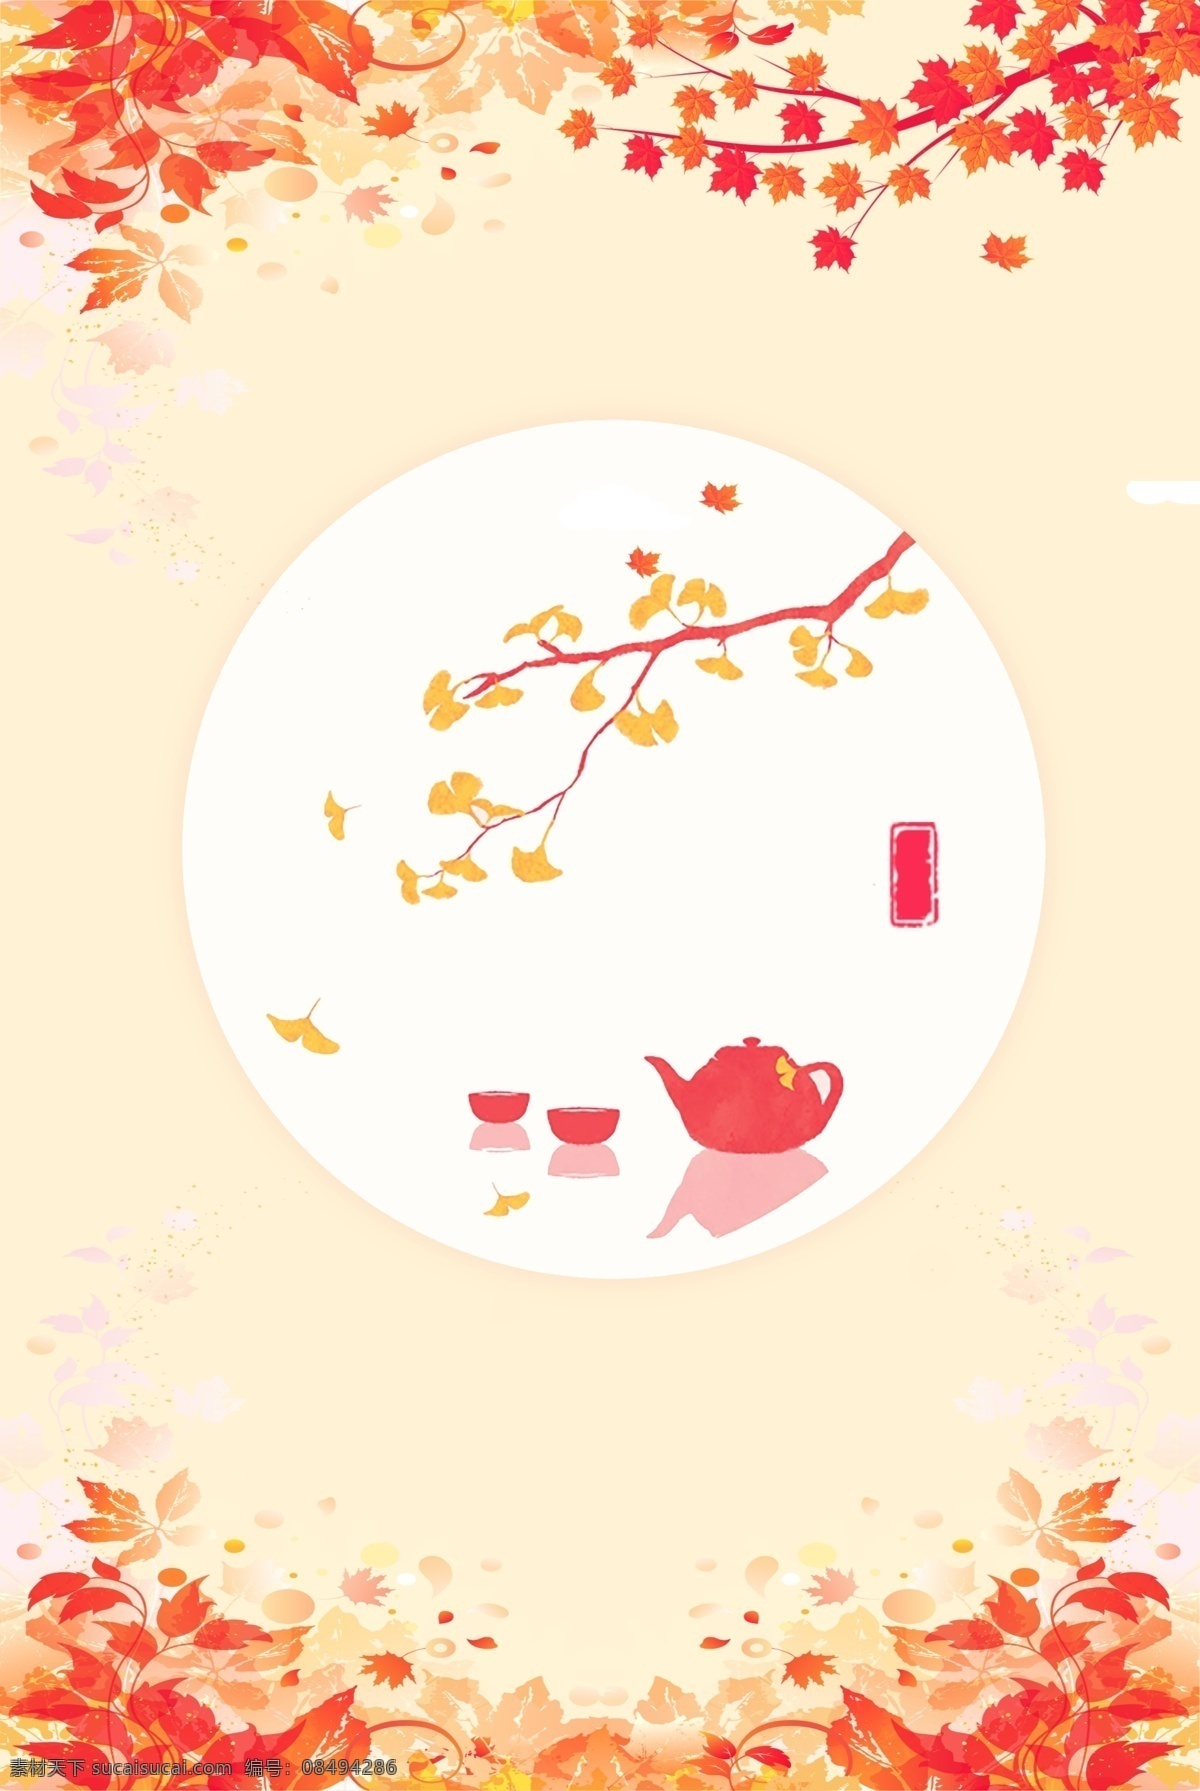 彩色 植物 枫叶 背景 自然 叶子 装饰 大树 落叶 秋季